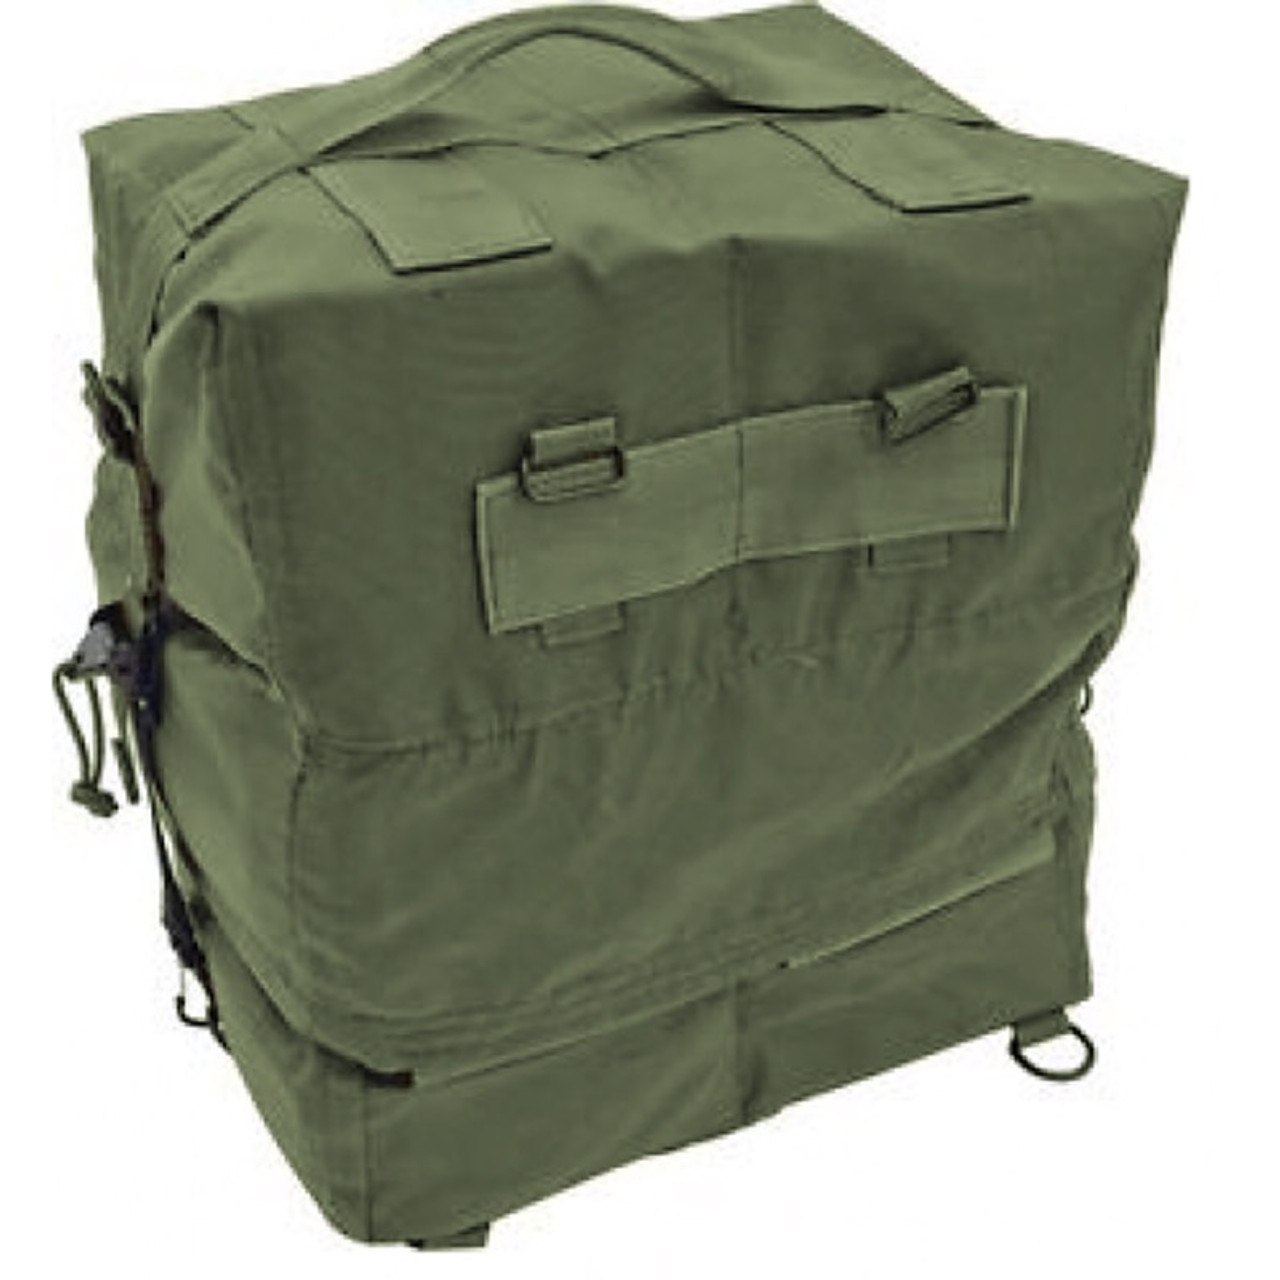 Military M17 Medical Bag